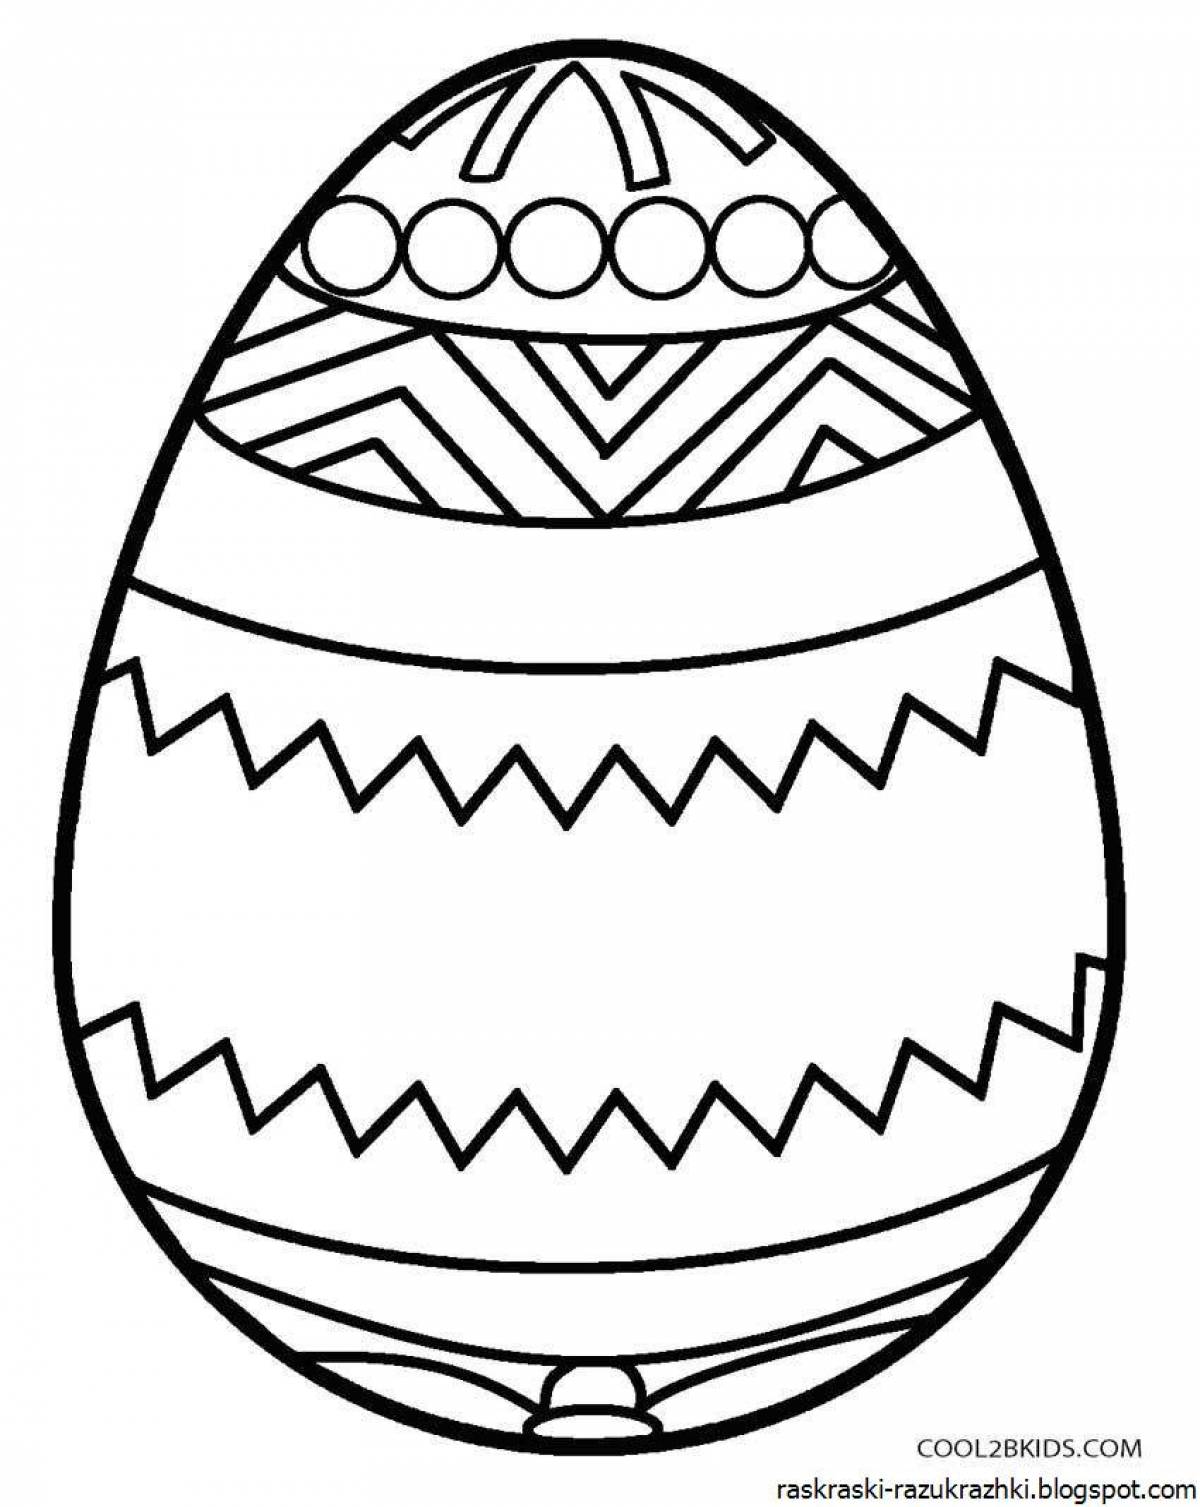 Увлекательная раскраска пасхальных яиц